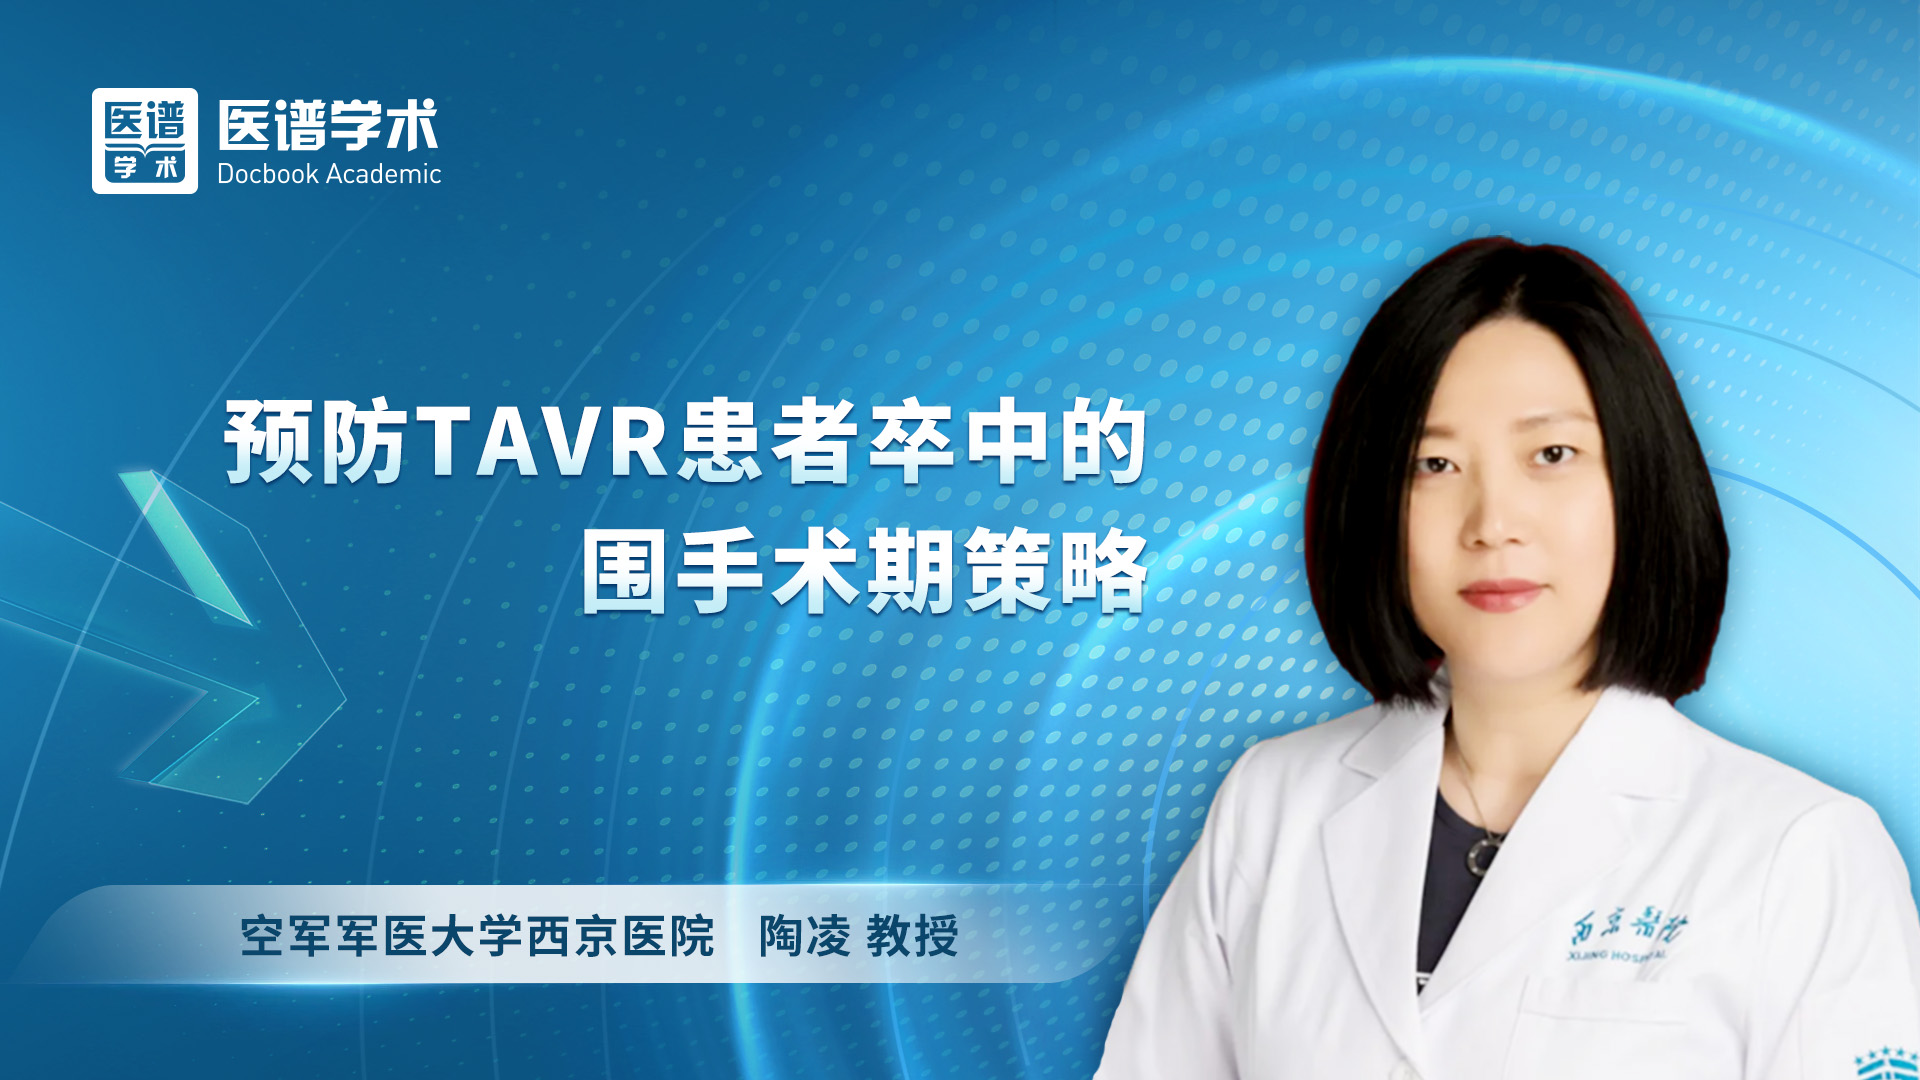 陶凌-预防TAVR患者卒中的围手术期策略